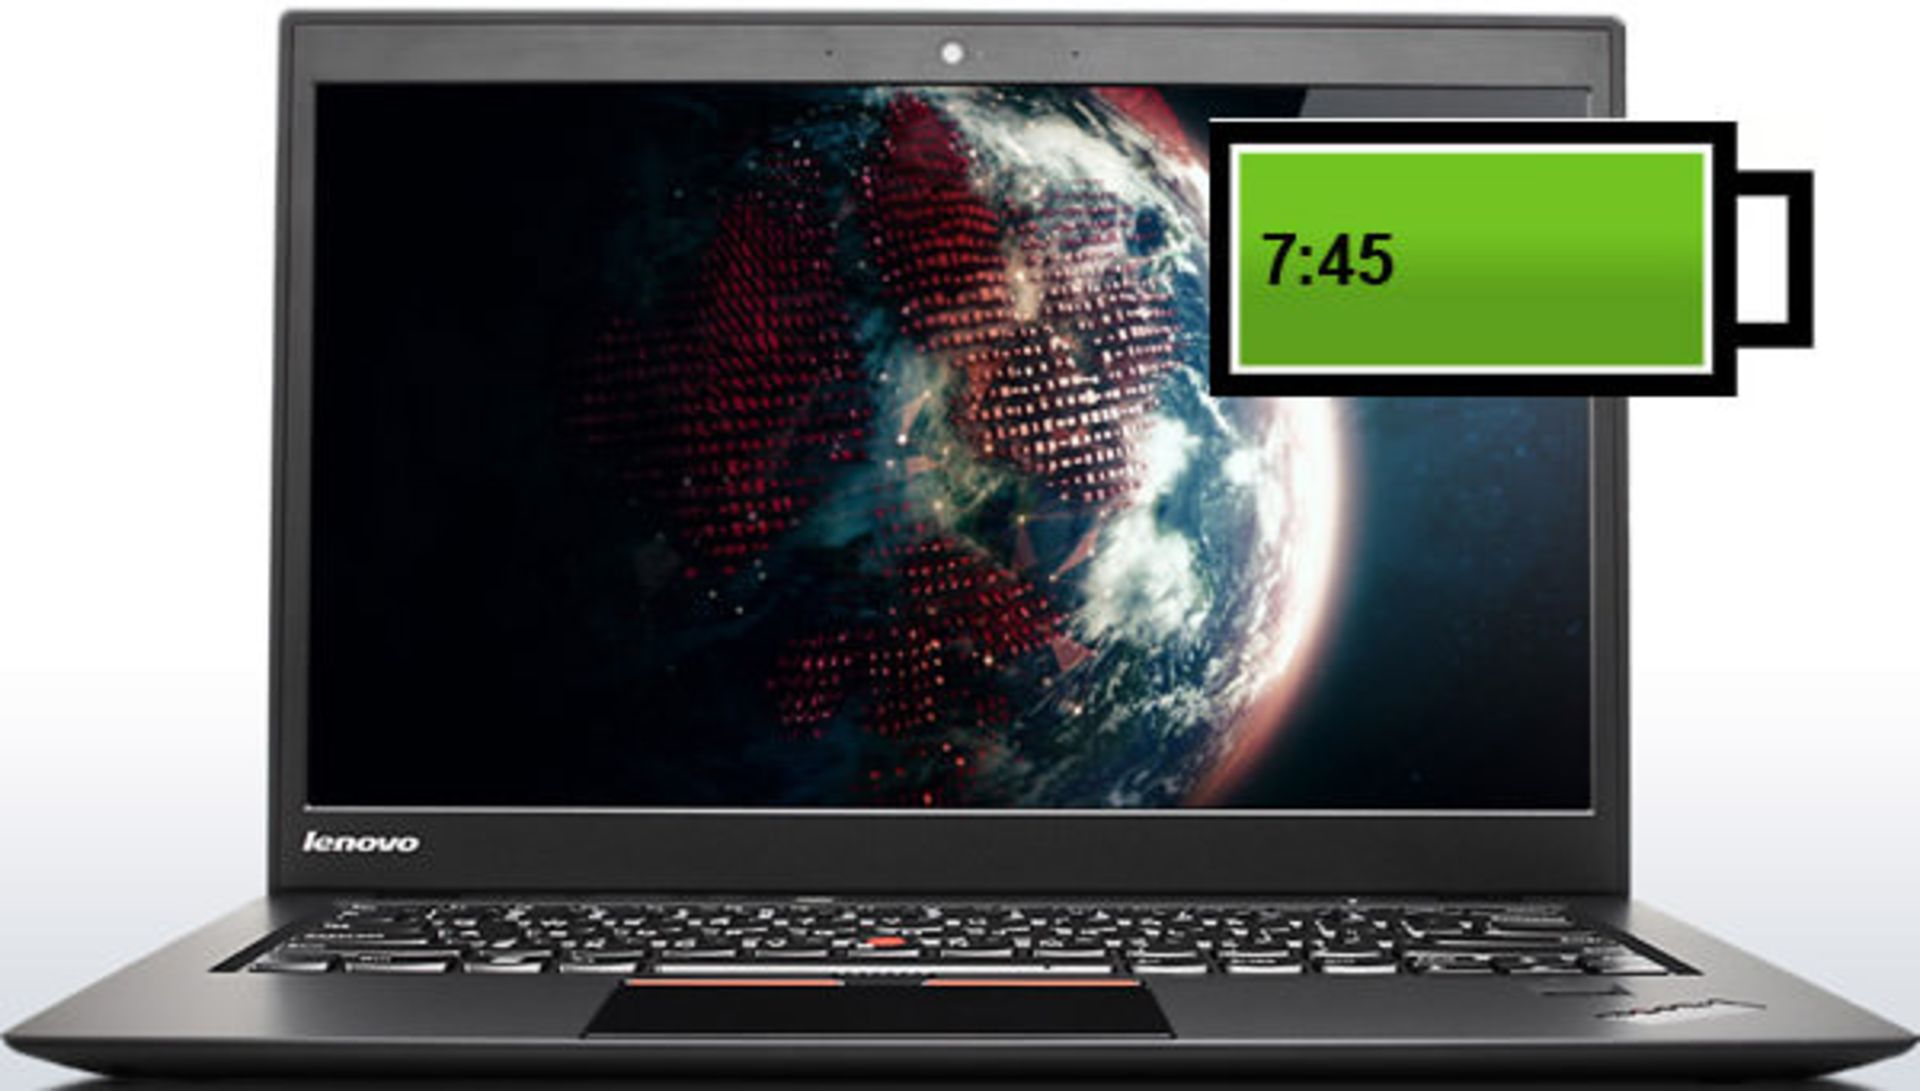 ThinkPad-X1-Carbon-Laptop-PC-Front-View-2L-940x475